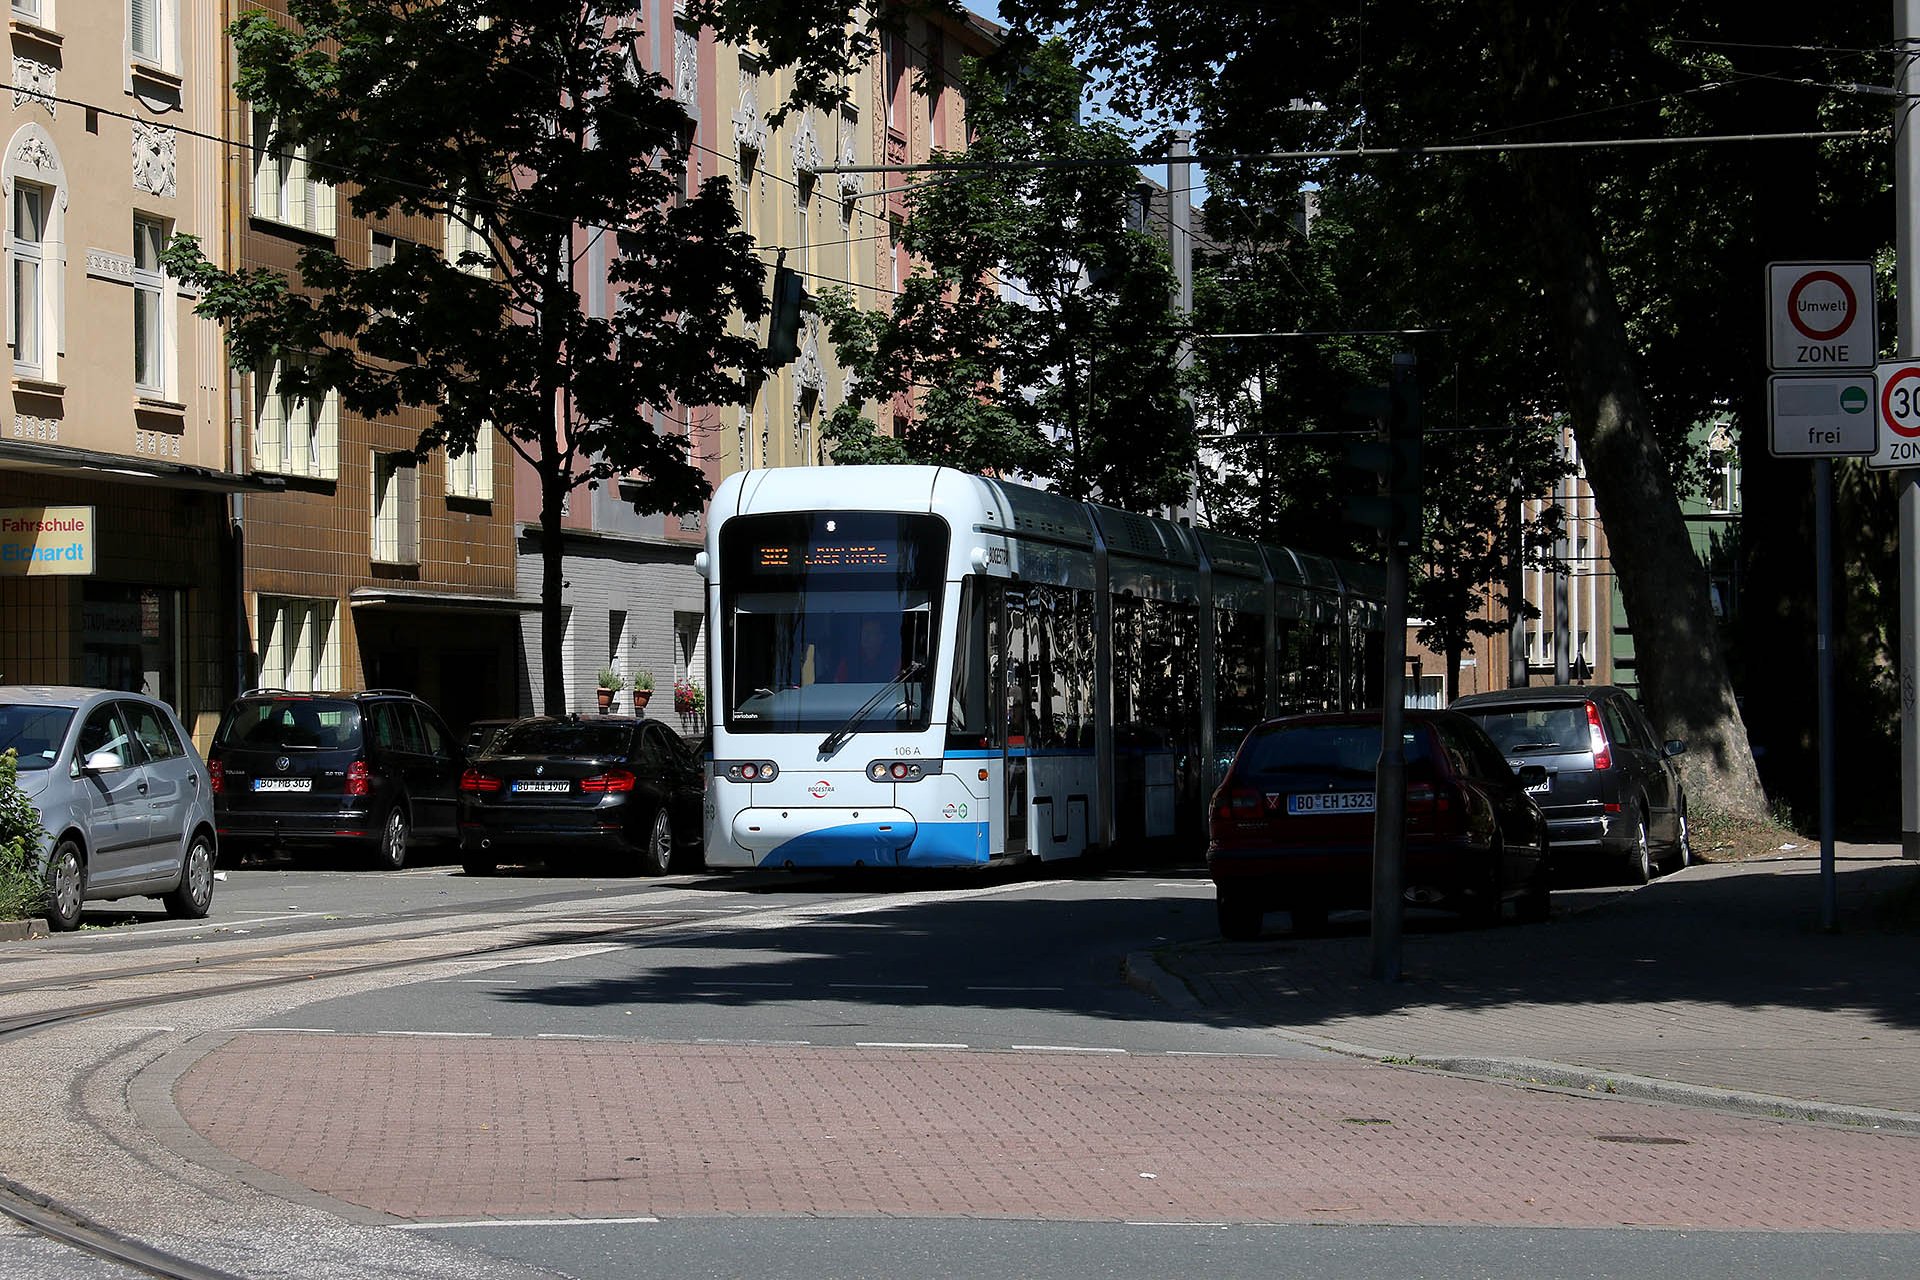 Variobahn 106 Variobahnen kommen in Bochum seit 2008 zu Einsatz. Drei Serien sind bestellt. Type Variobahn trams are in service in Bochum since 2008. Three series are ordered.